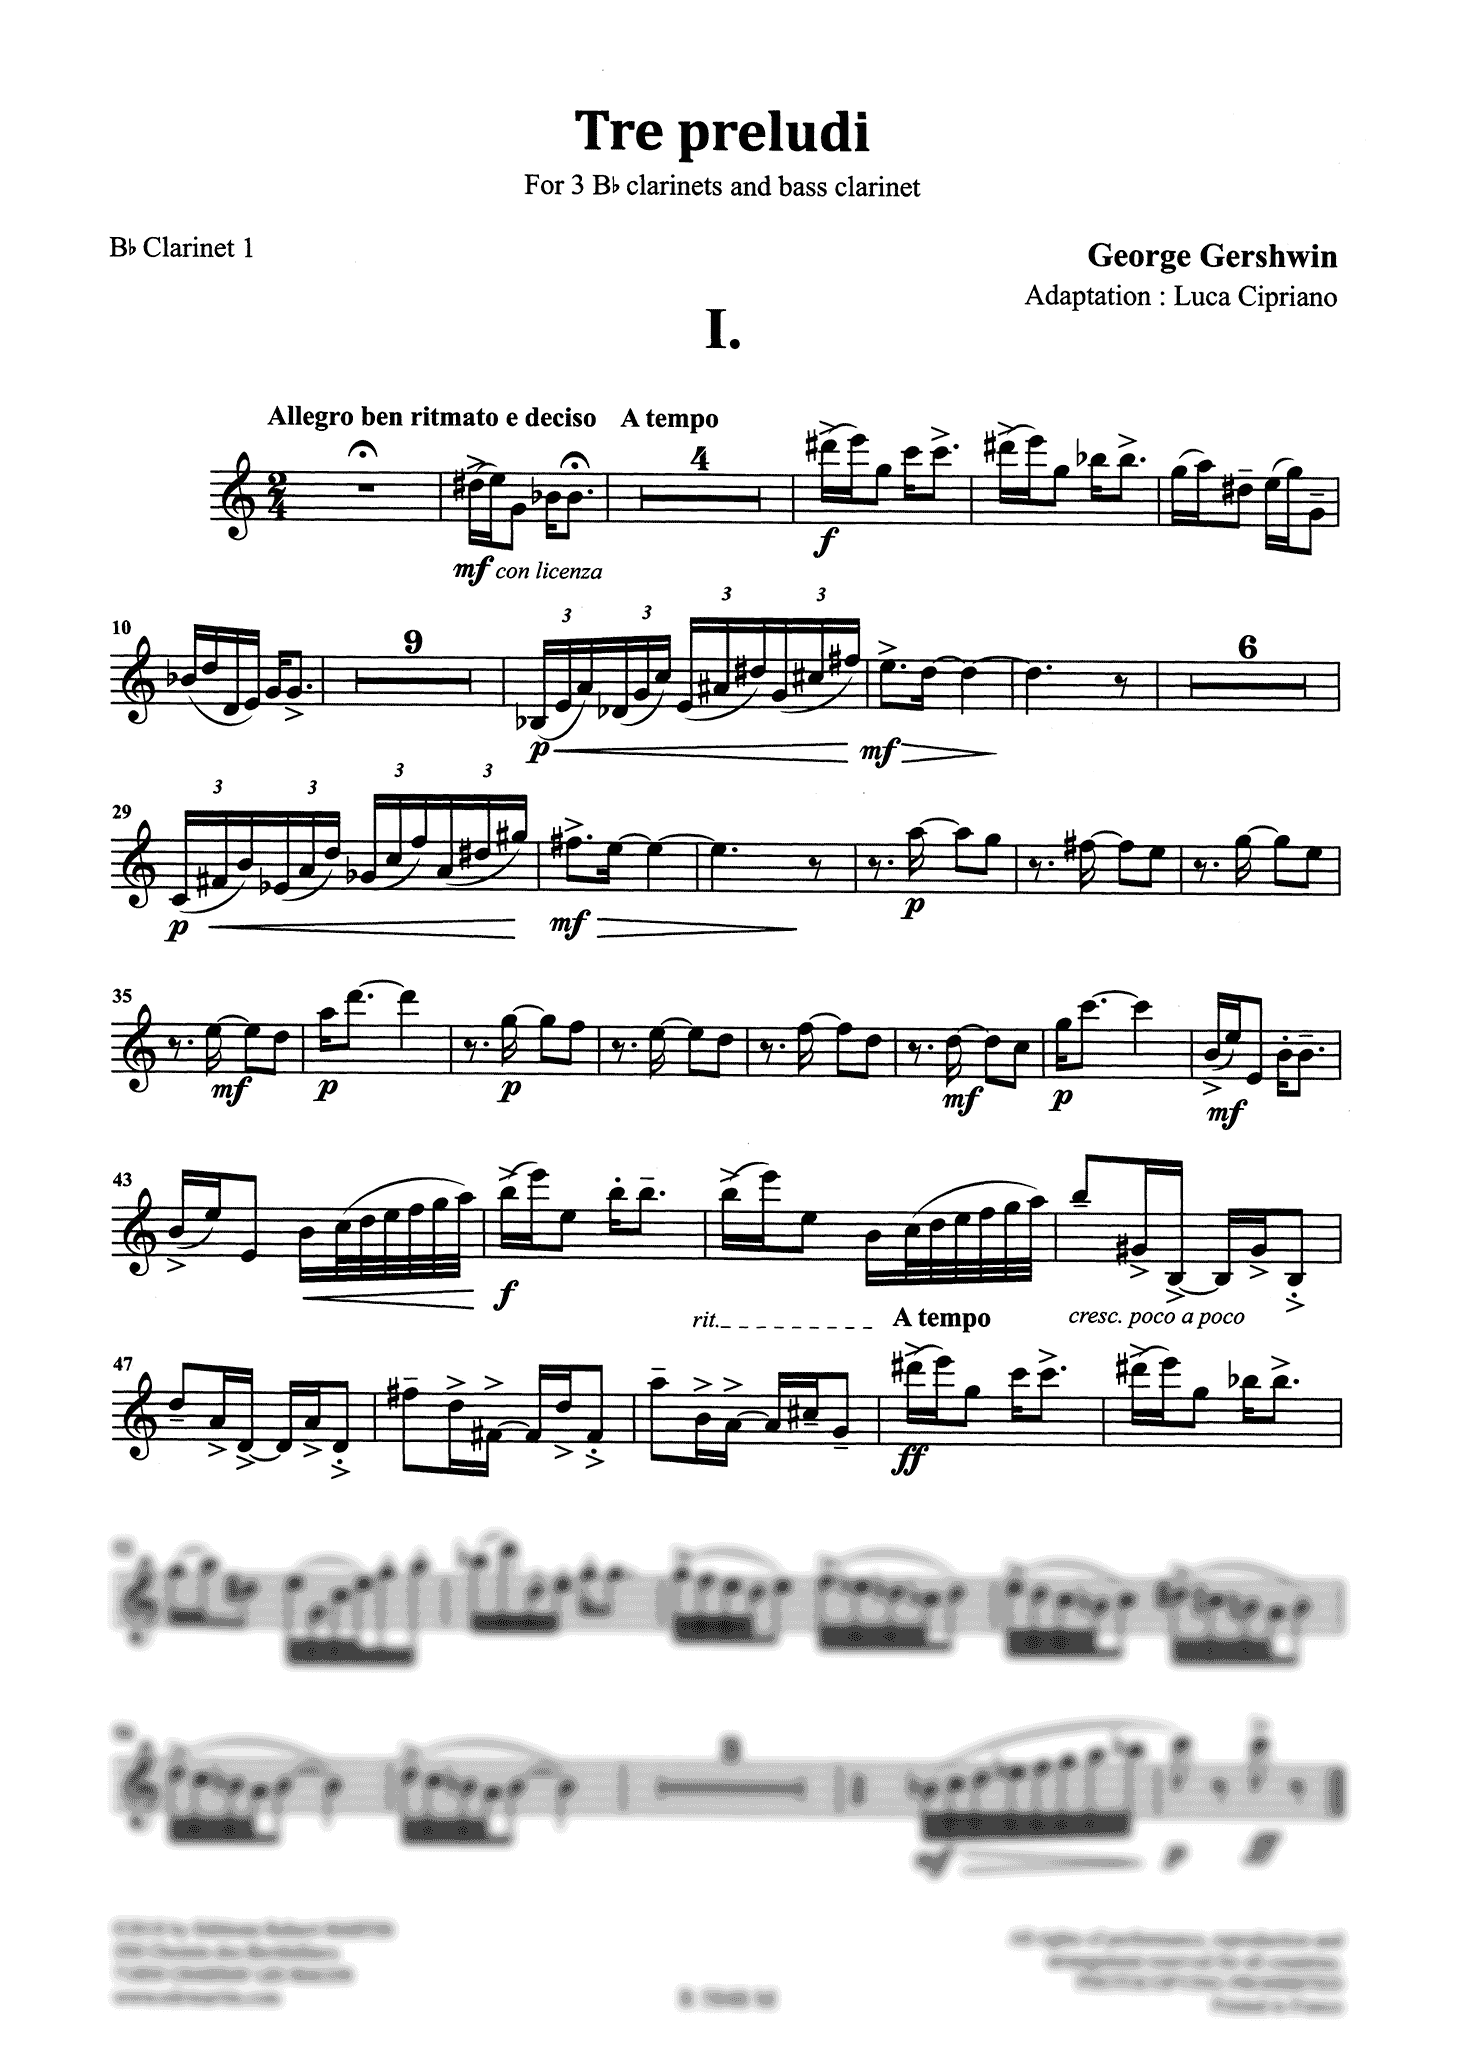 Gershwin 3 Preludes First Clarinet part